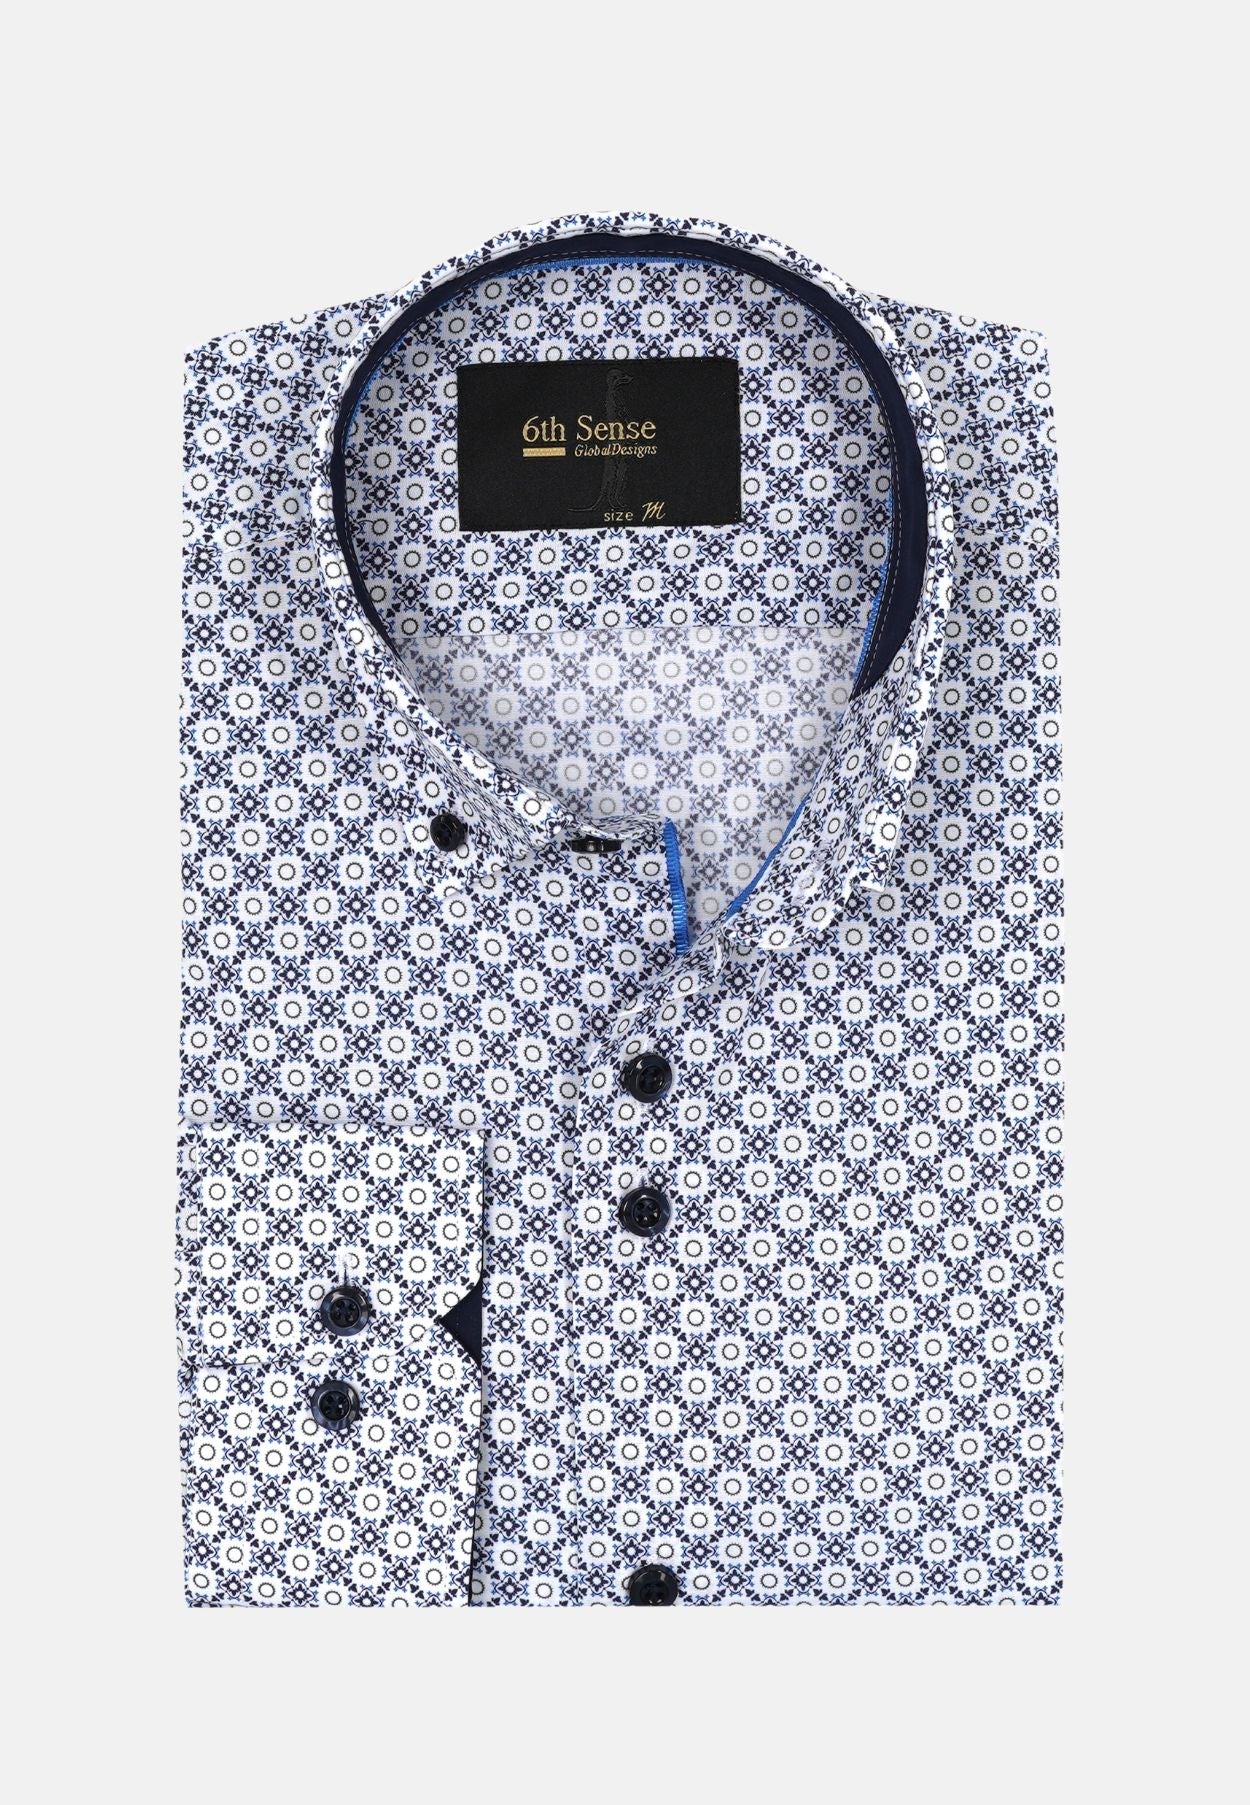 Men's Button Down White Circle Print Shirt-Front View